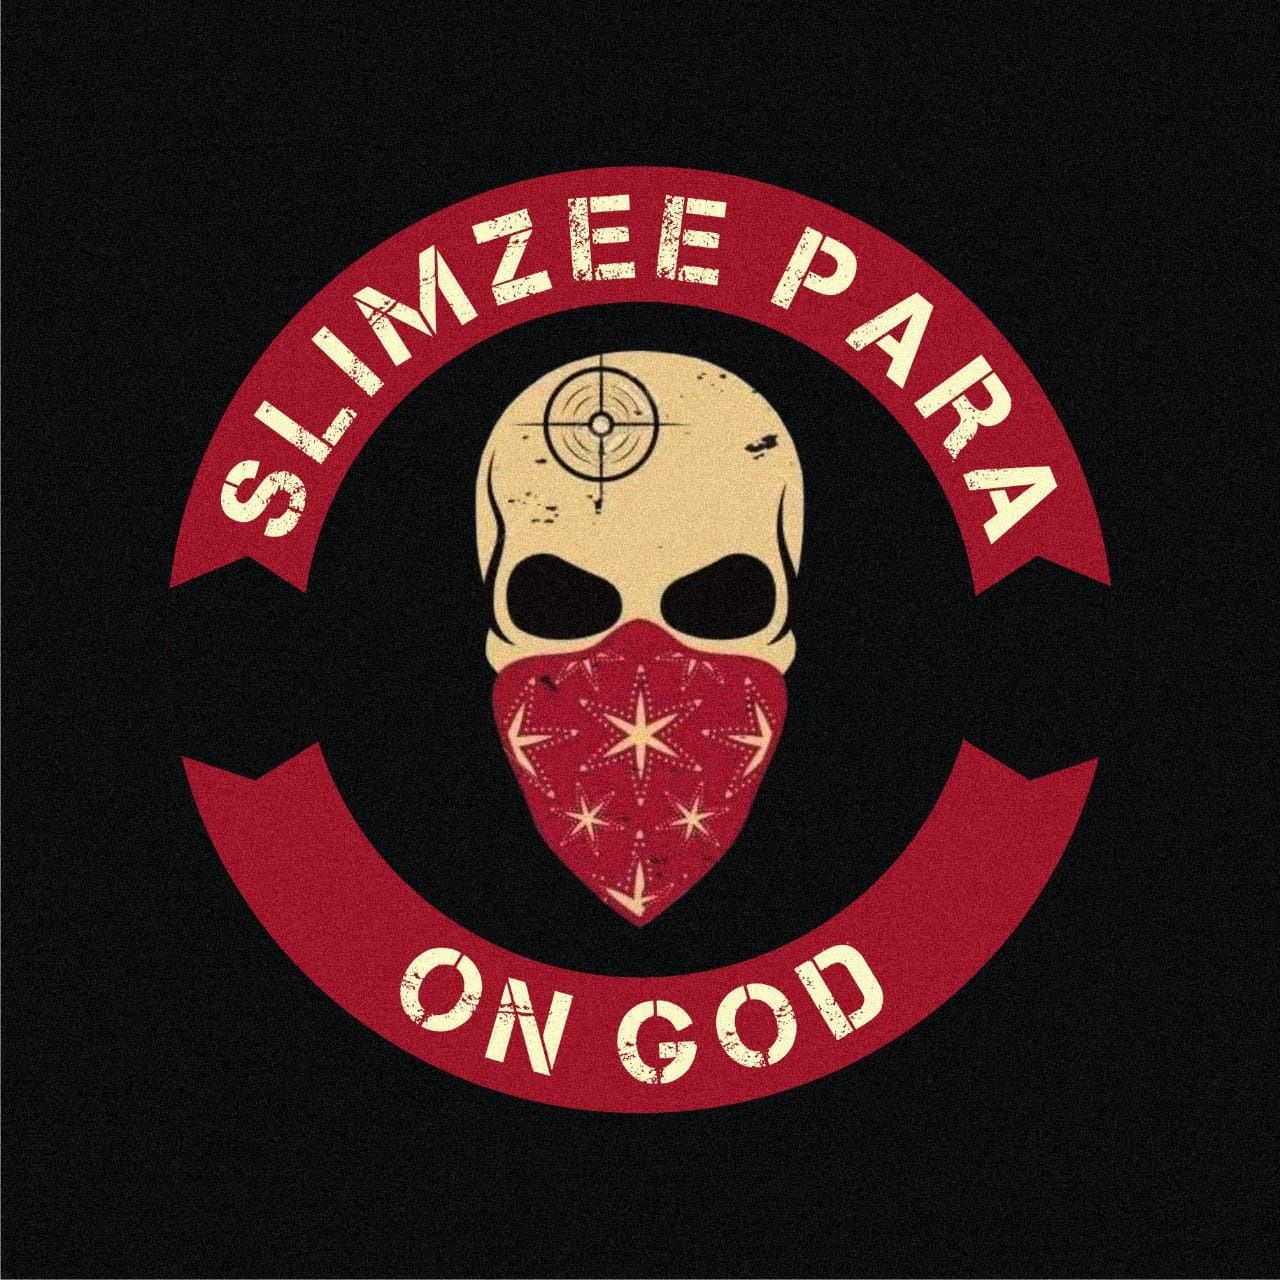 Slimzeepara - On God